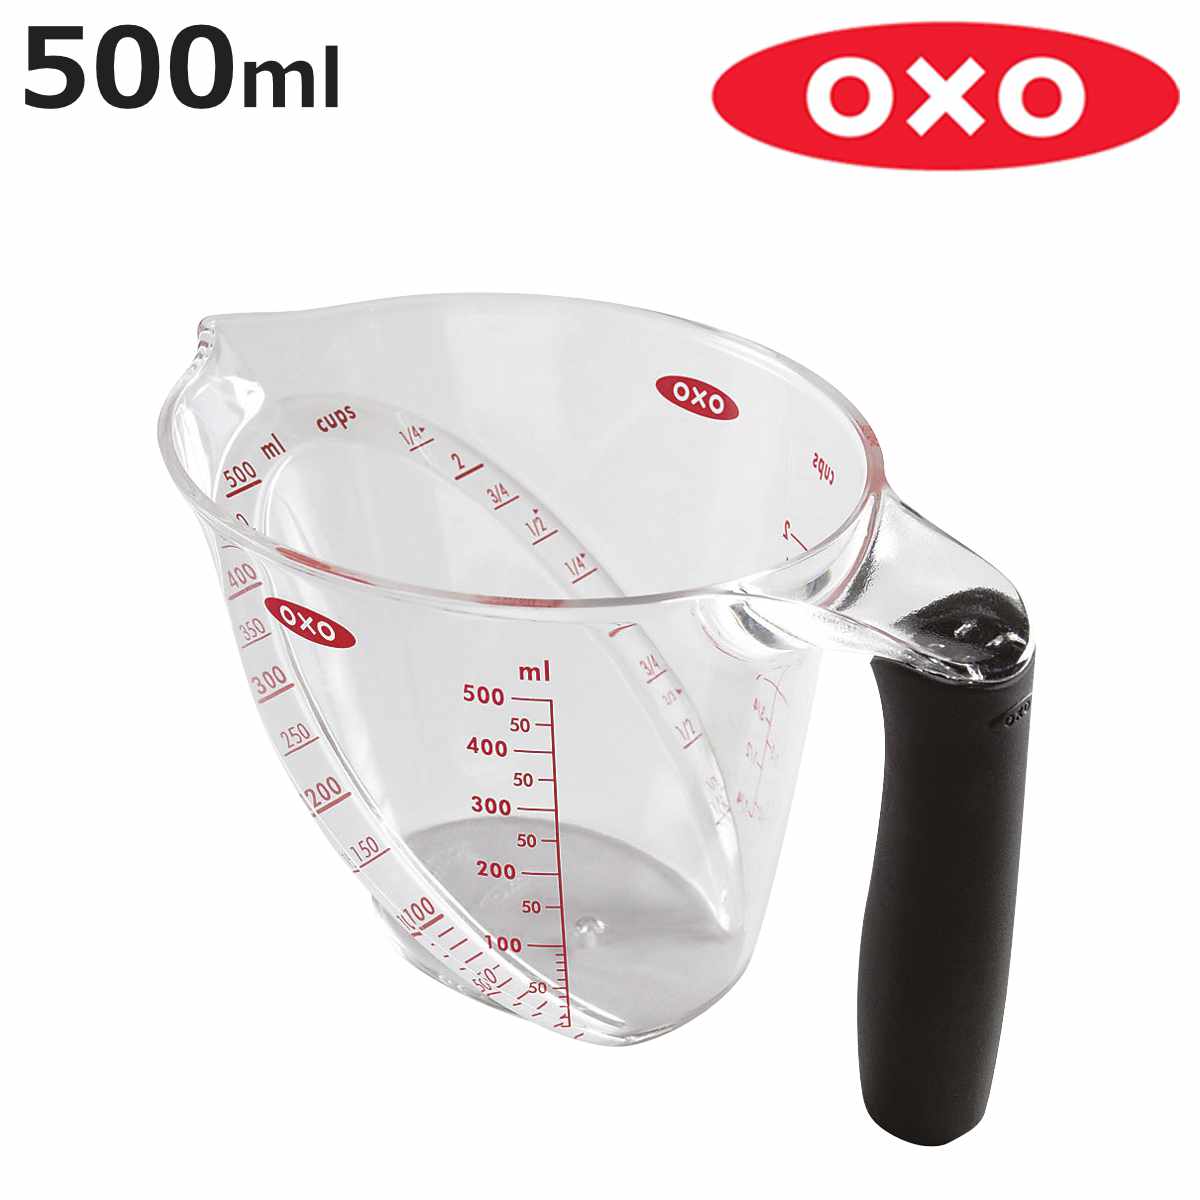 OXO（キッチン用品） OXO アングルドメジャーカップ（中）500ml 1114980 計量カップの商品画像